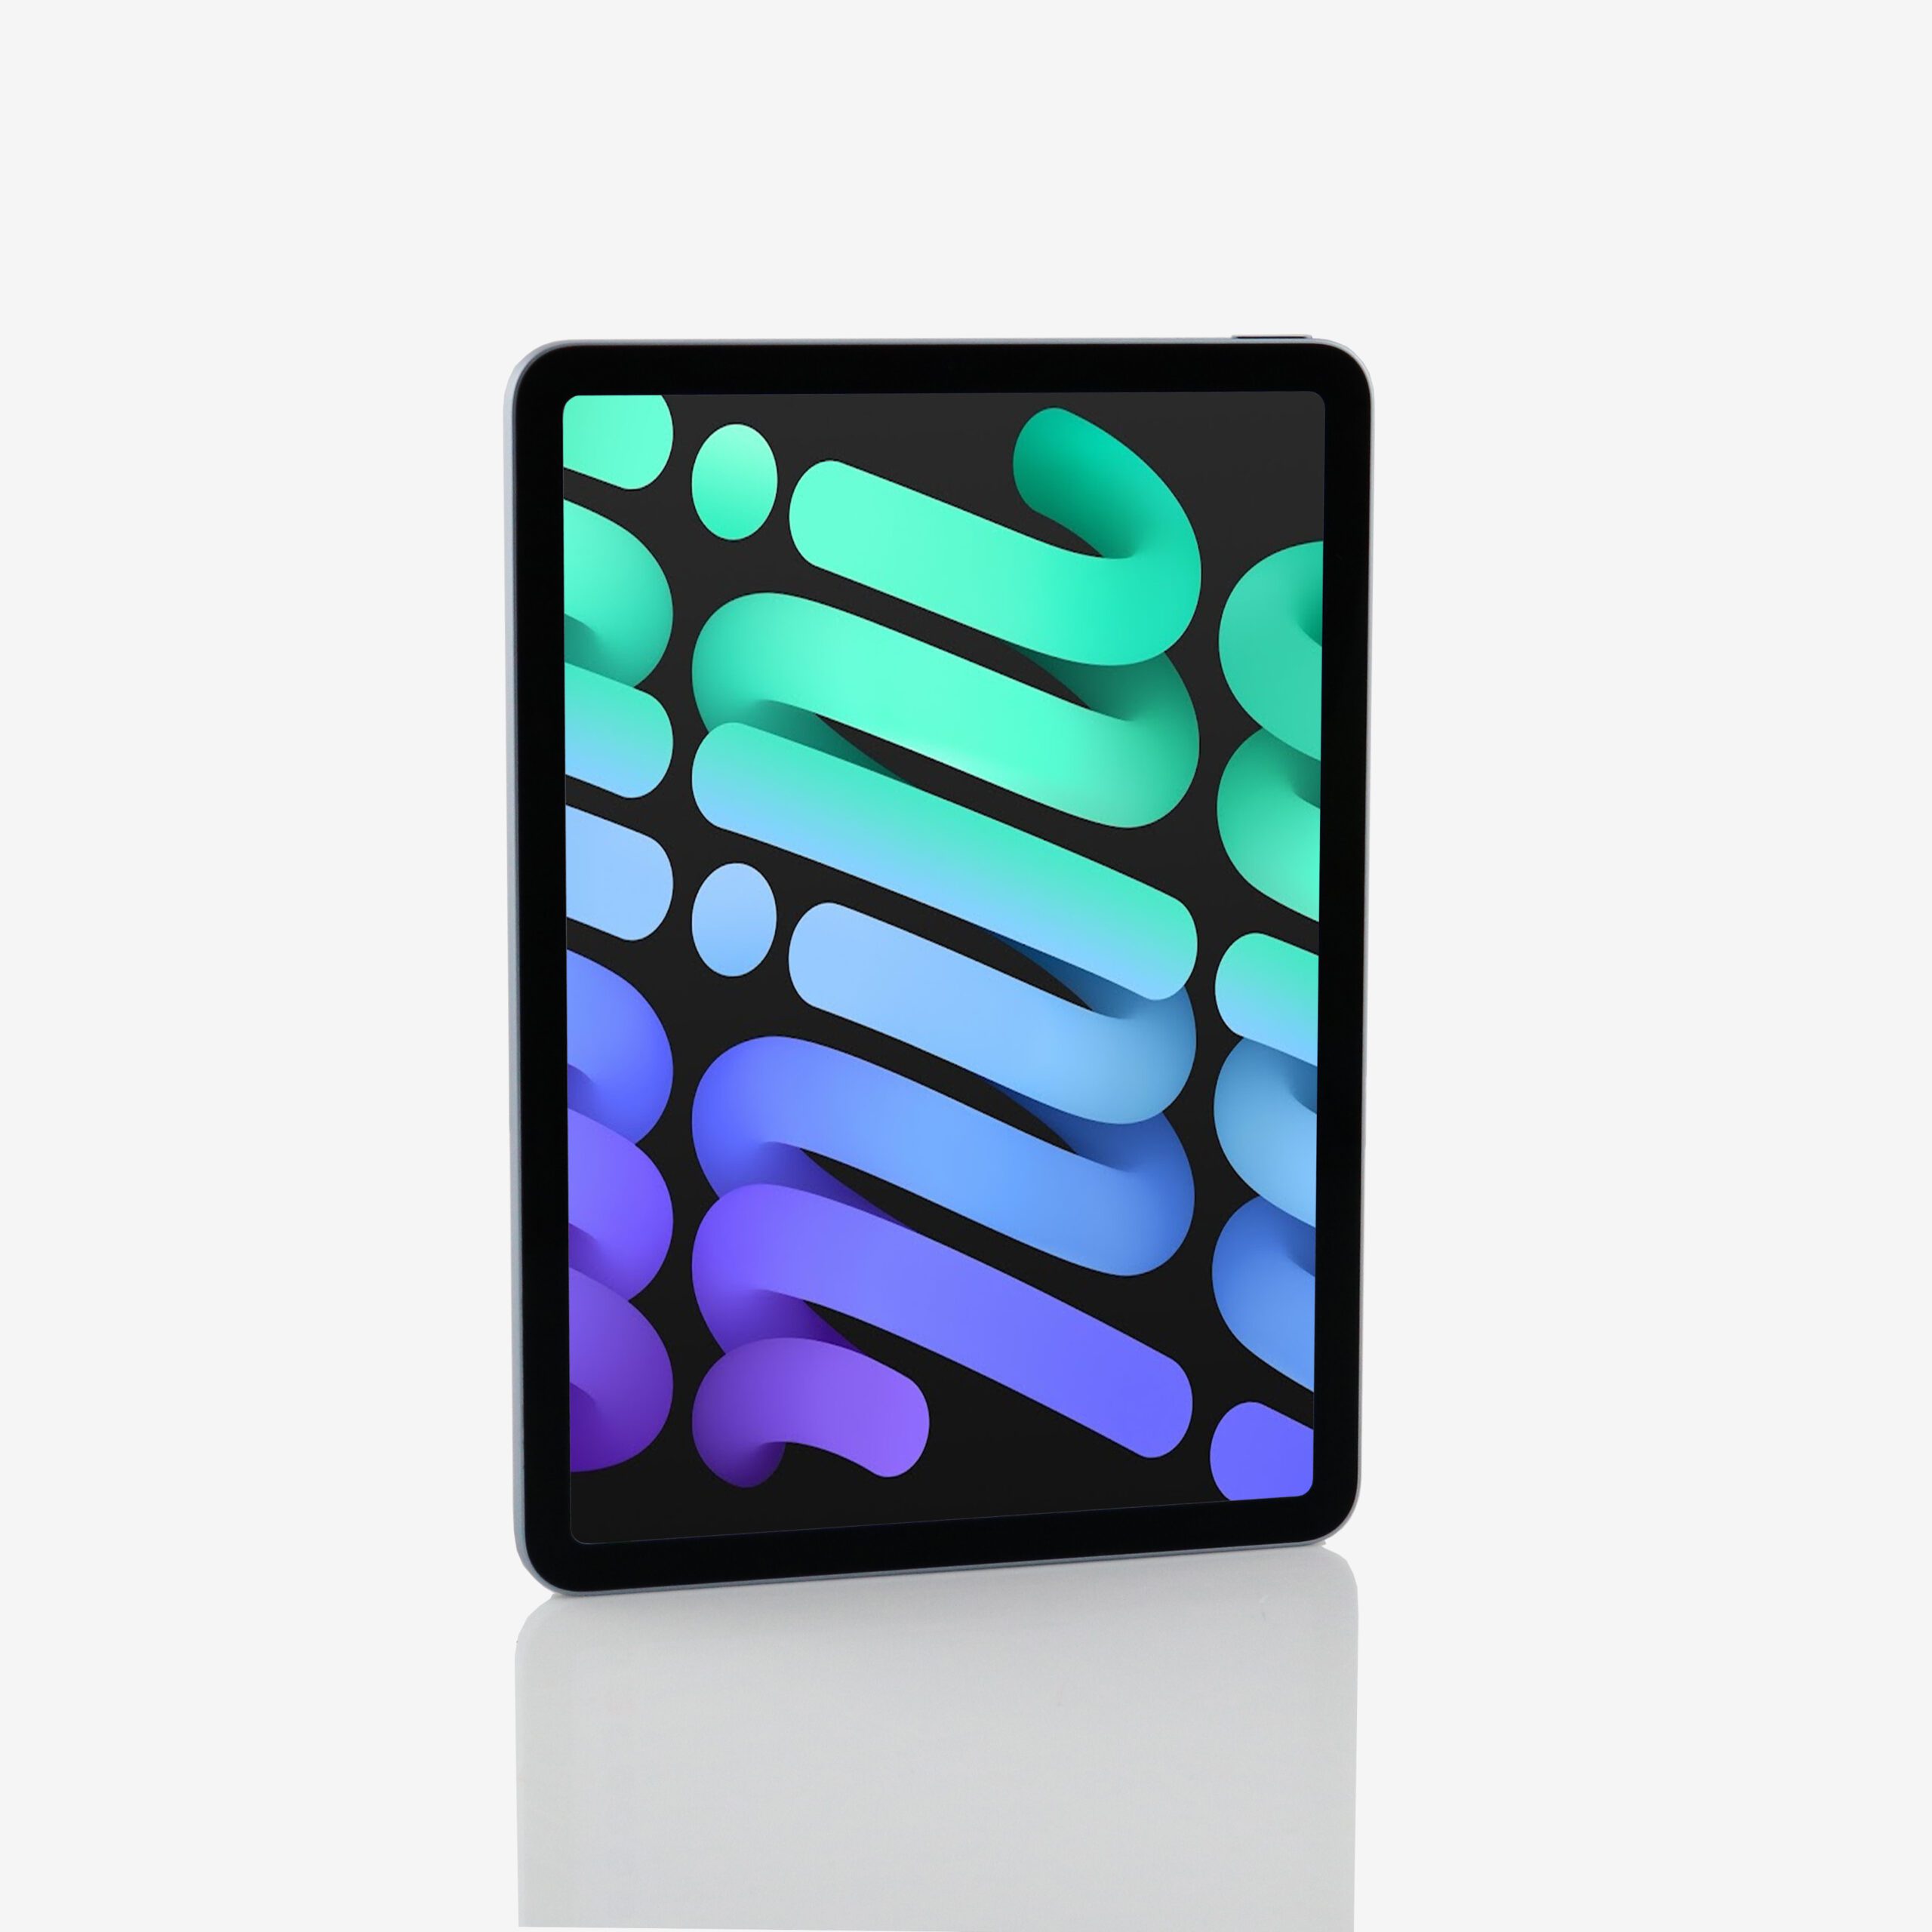 1 x iPad Air 4 (Wi-Fi) Blue (2020)